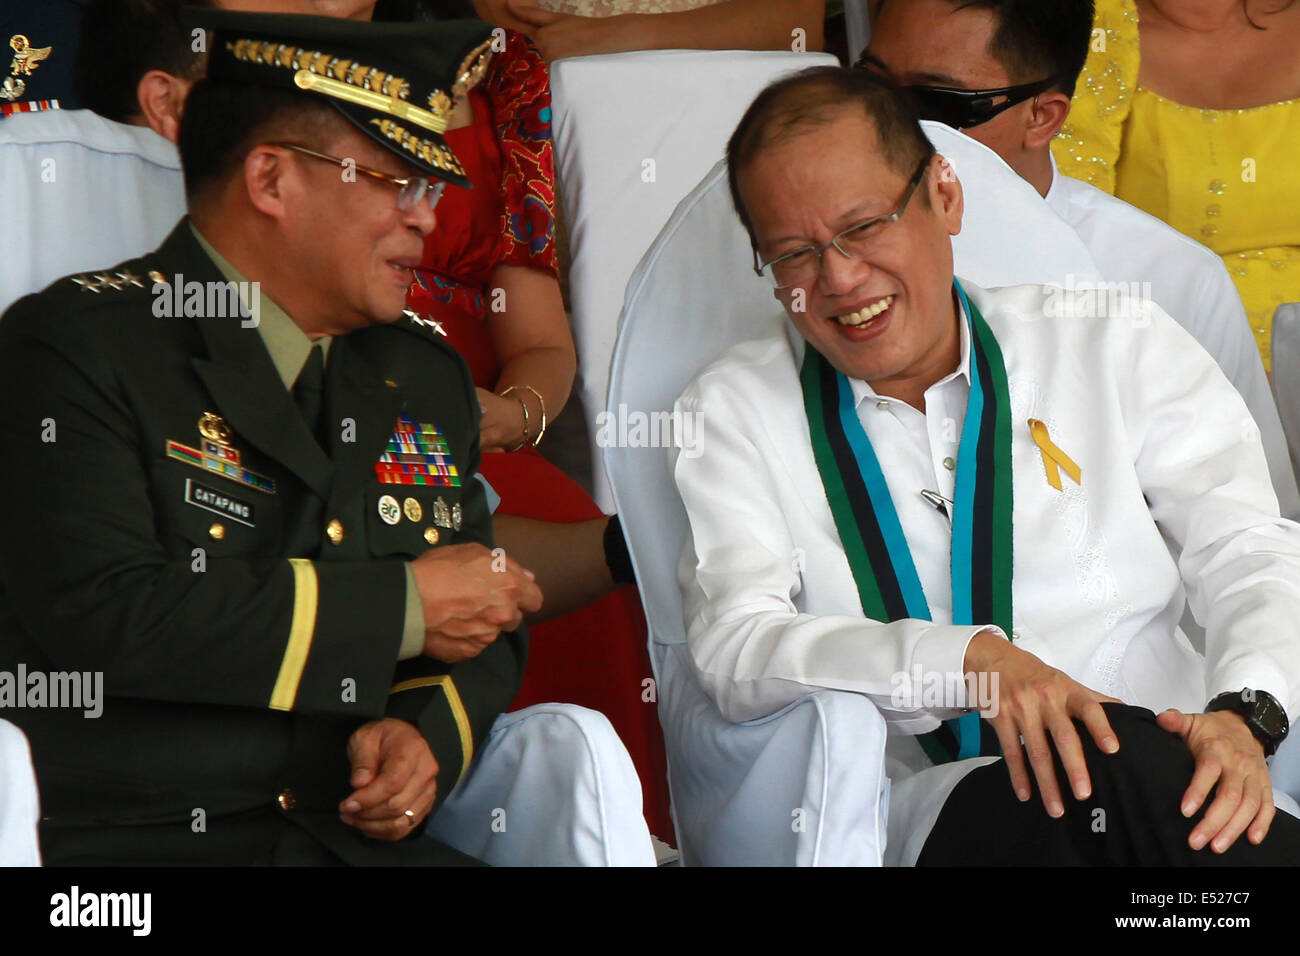 (140718)--QUEZON CITY, 18. Juli 2014 (Xinhua)--die eingehenden Streitkräfte der Philippinen (AFP) Chef des Stabes Generalleutnant Gregorio Pio Catapang, Jr. (L) Gespräche mit philippinische Präsident Benigno Aquino III. während die Riten der AFP-Änderung der Befehl in Camp Aguinaldo in Quezon City, Philippinen am 18. Juli 2014. Philippinische Präsident Benigno Aquino III. ernannte Leutnant General Gregorio Pio Catapang, Jr. als der neue Stabschef der Streitkräfte der Philippinen (AFP), die AFP sagte am Mittwoch. Catapang offiziell übernahm seinen Posten als 45. Stabschef der AFP auf Stockfoto